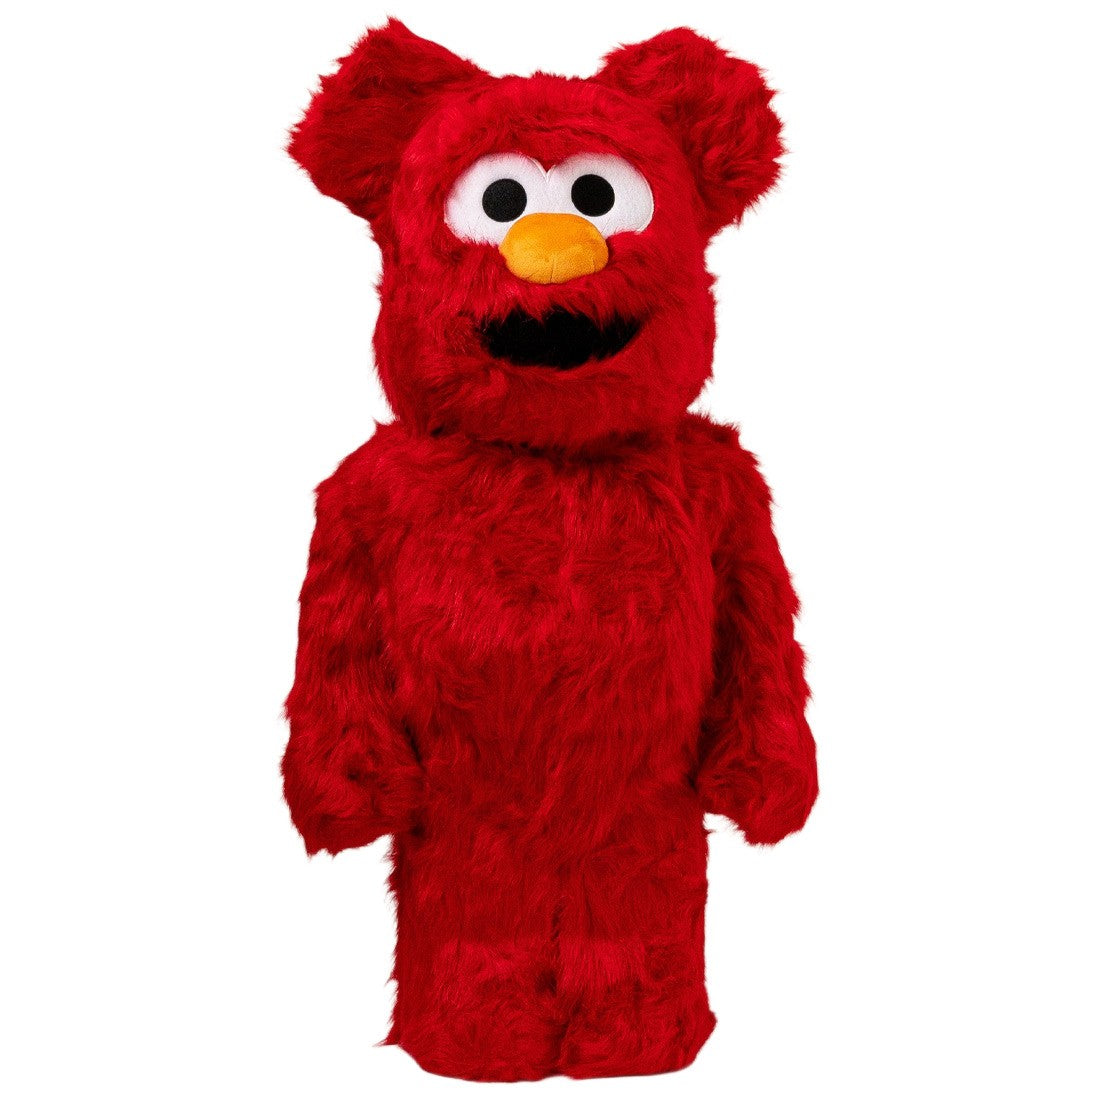 Sesame Street Elmo Costume Ver. 2 1000% Bearbrick